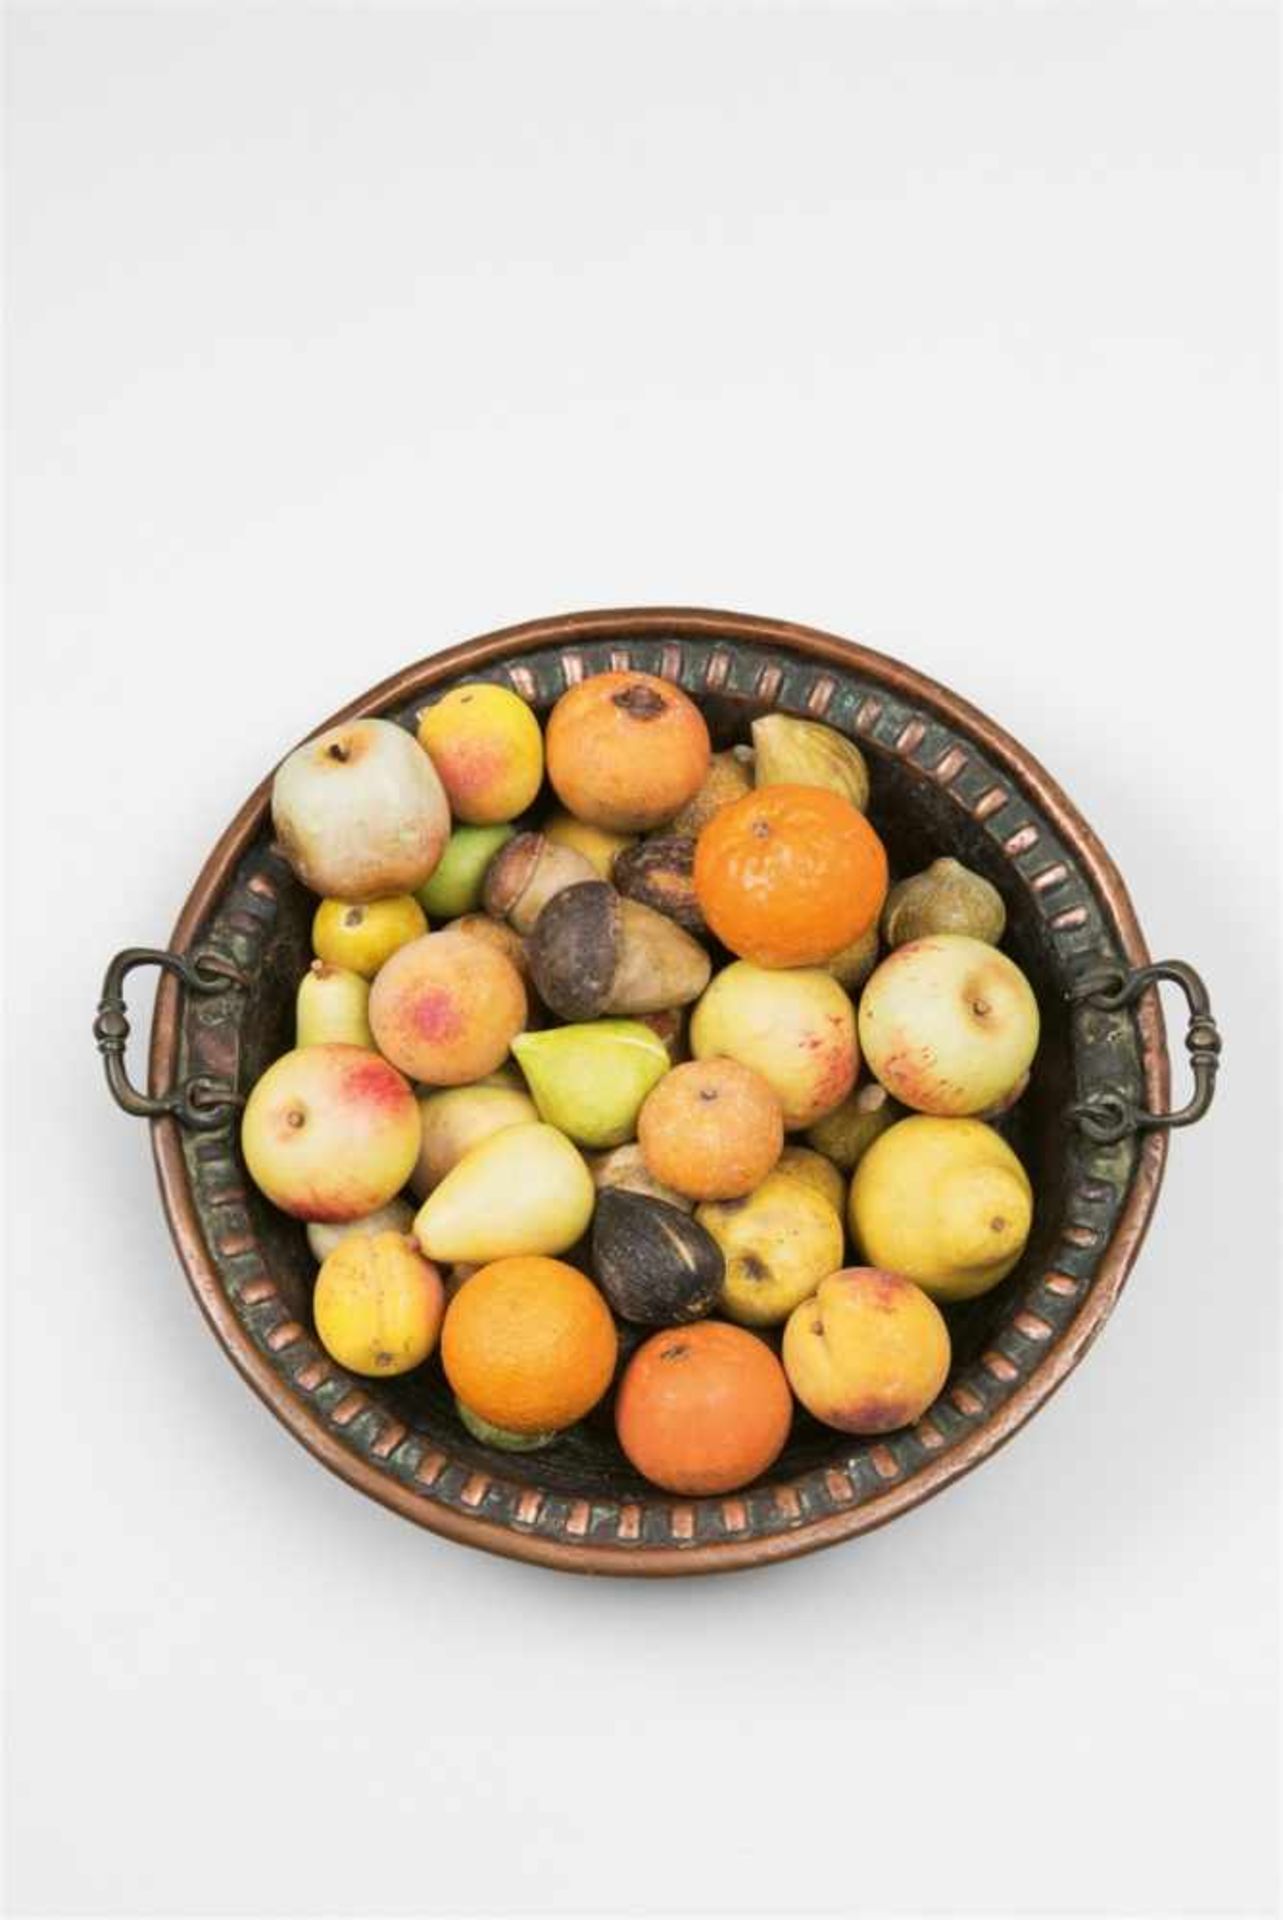 Schüssel mit Obst und PilzenKupfer, Bronzehenkel, gefärbter Marmor, Alabaster und farbig glasierte